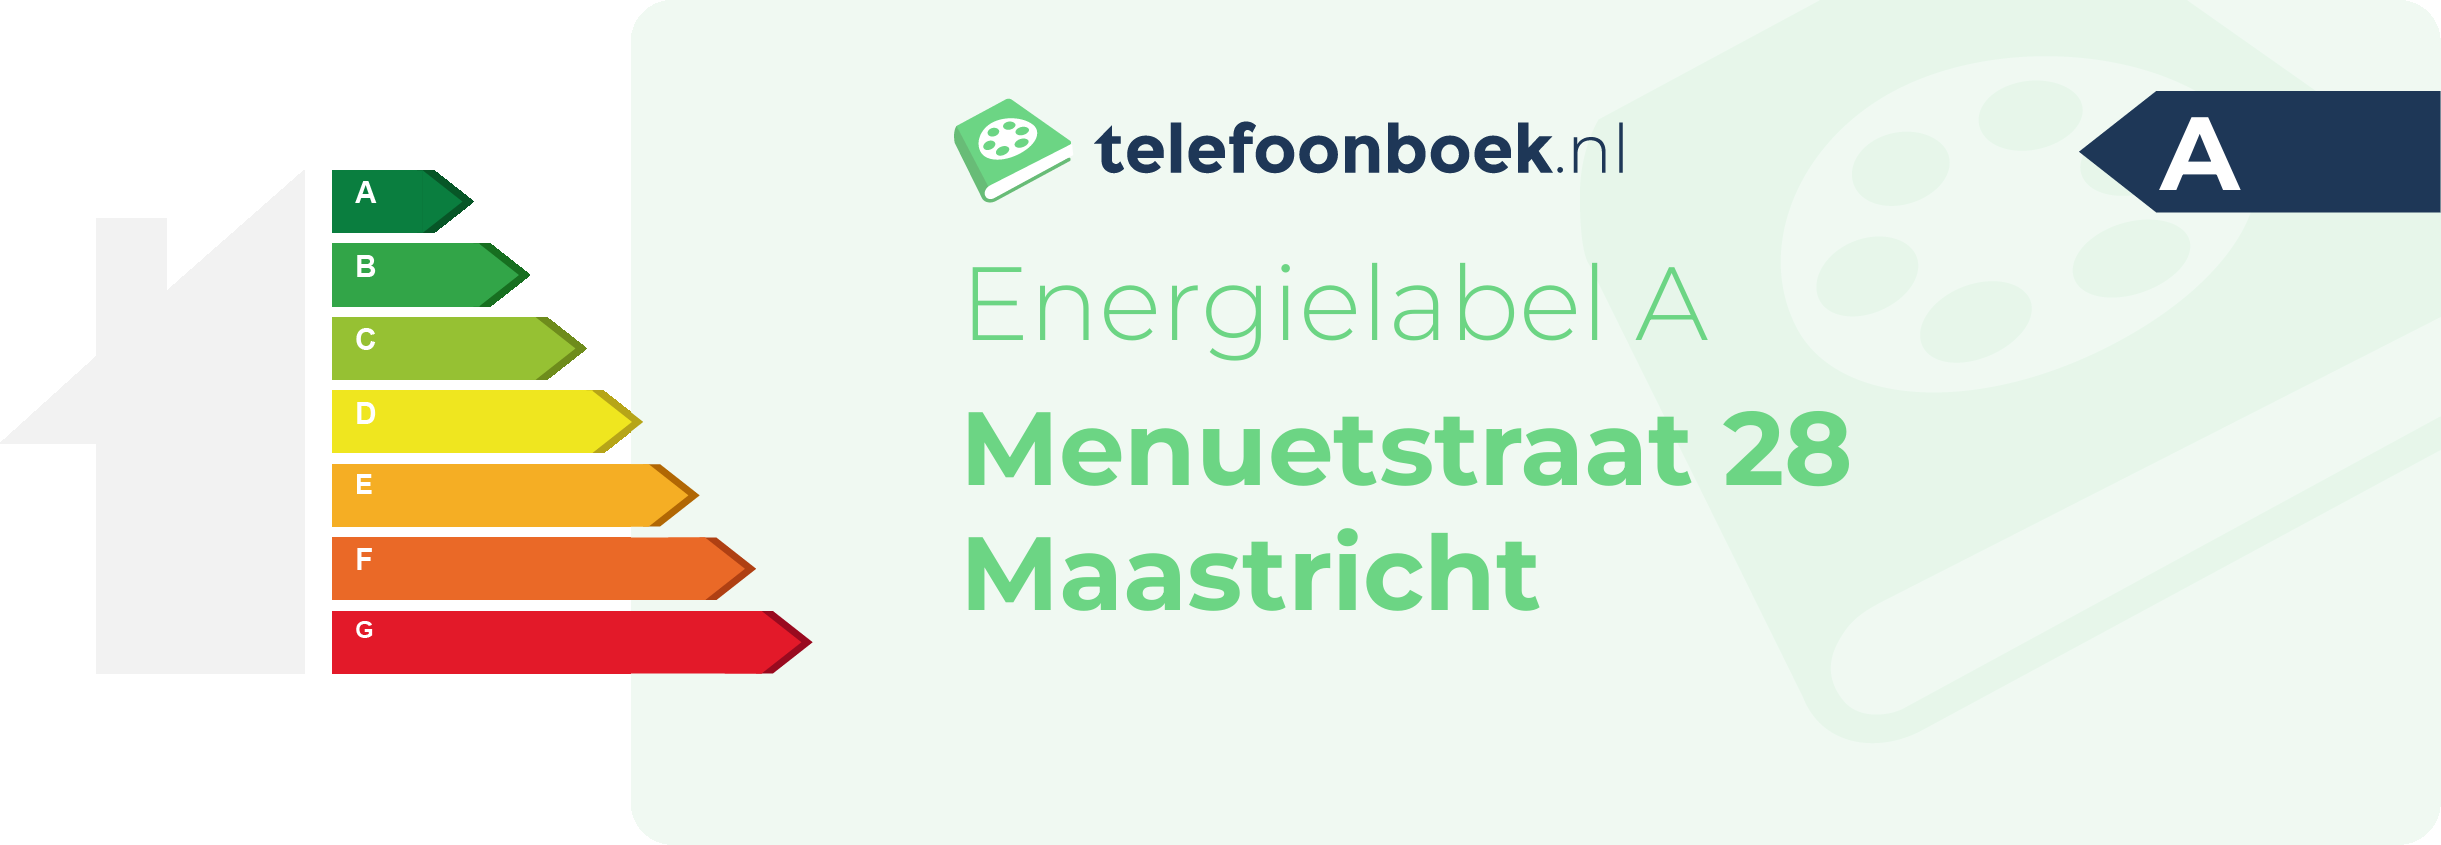 Energielabel Menuetstraat 28 Maastricht